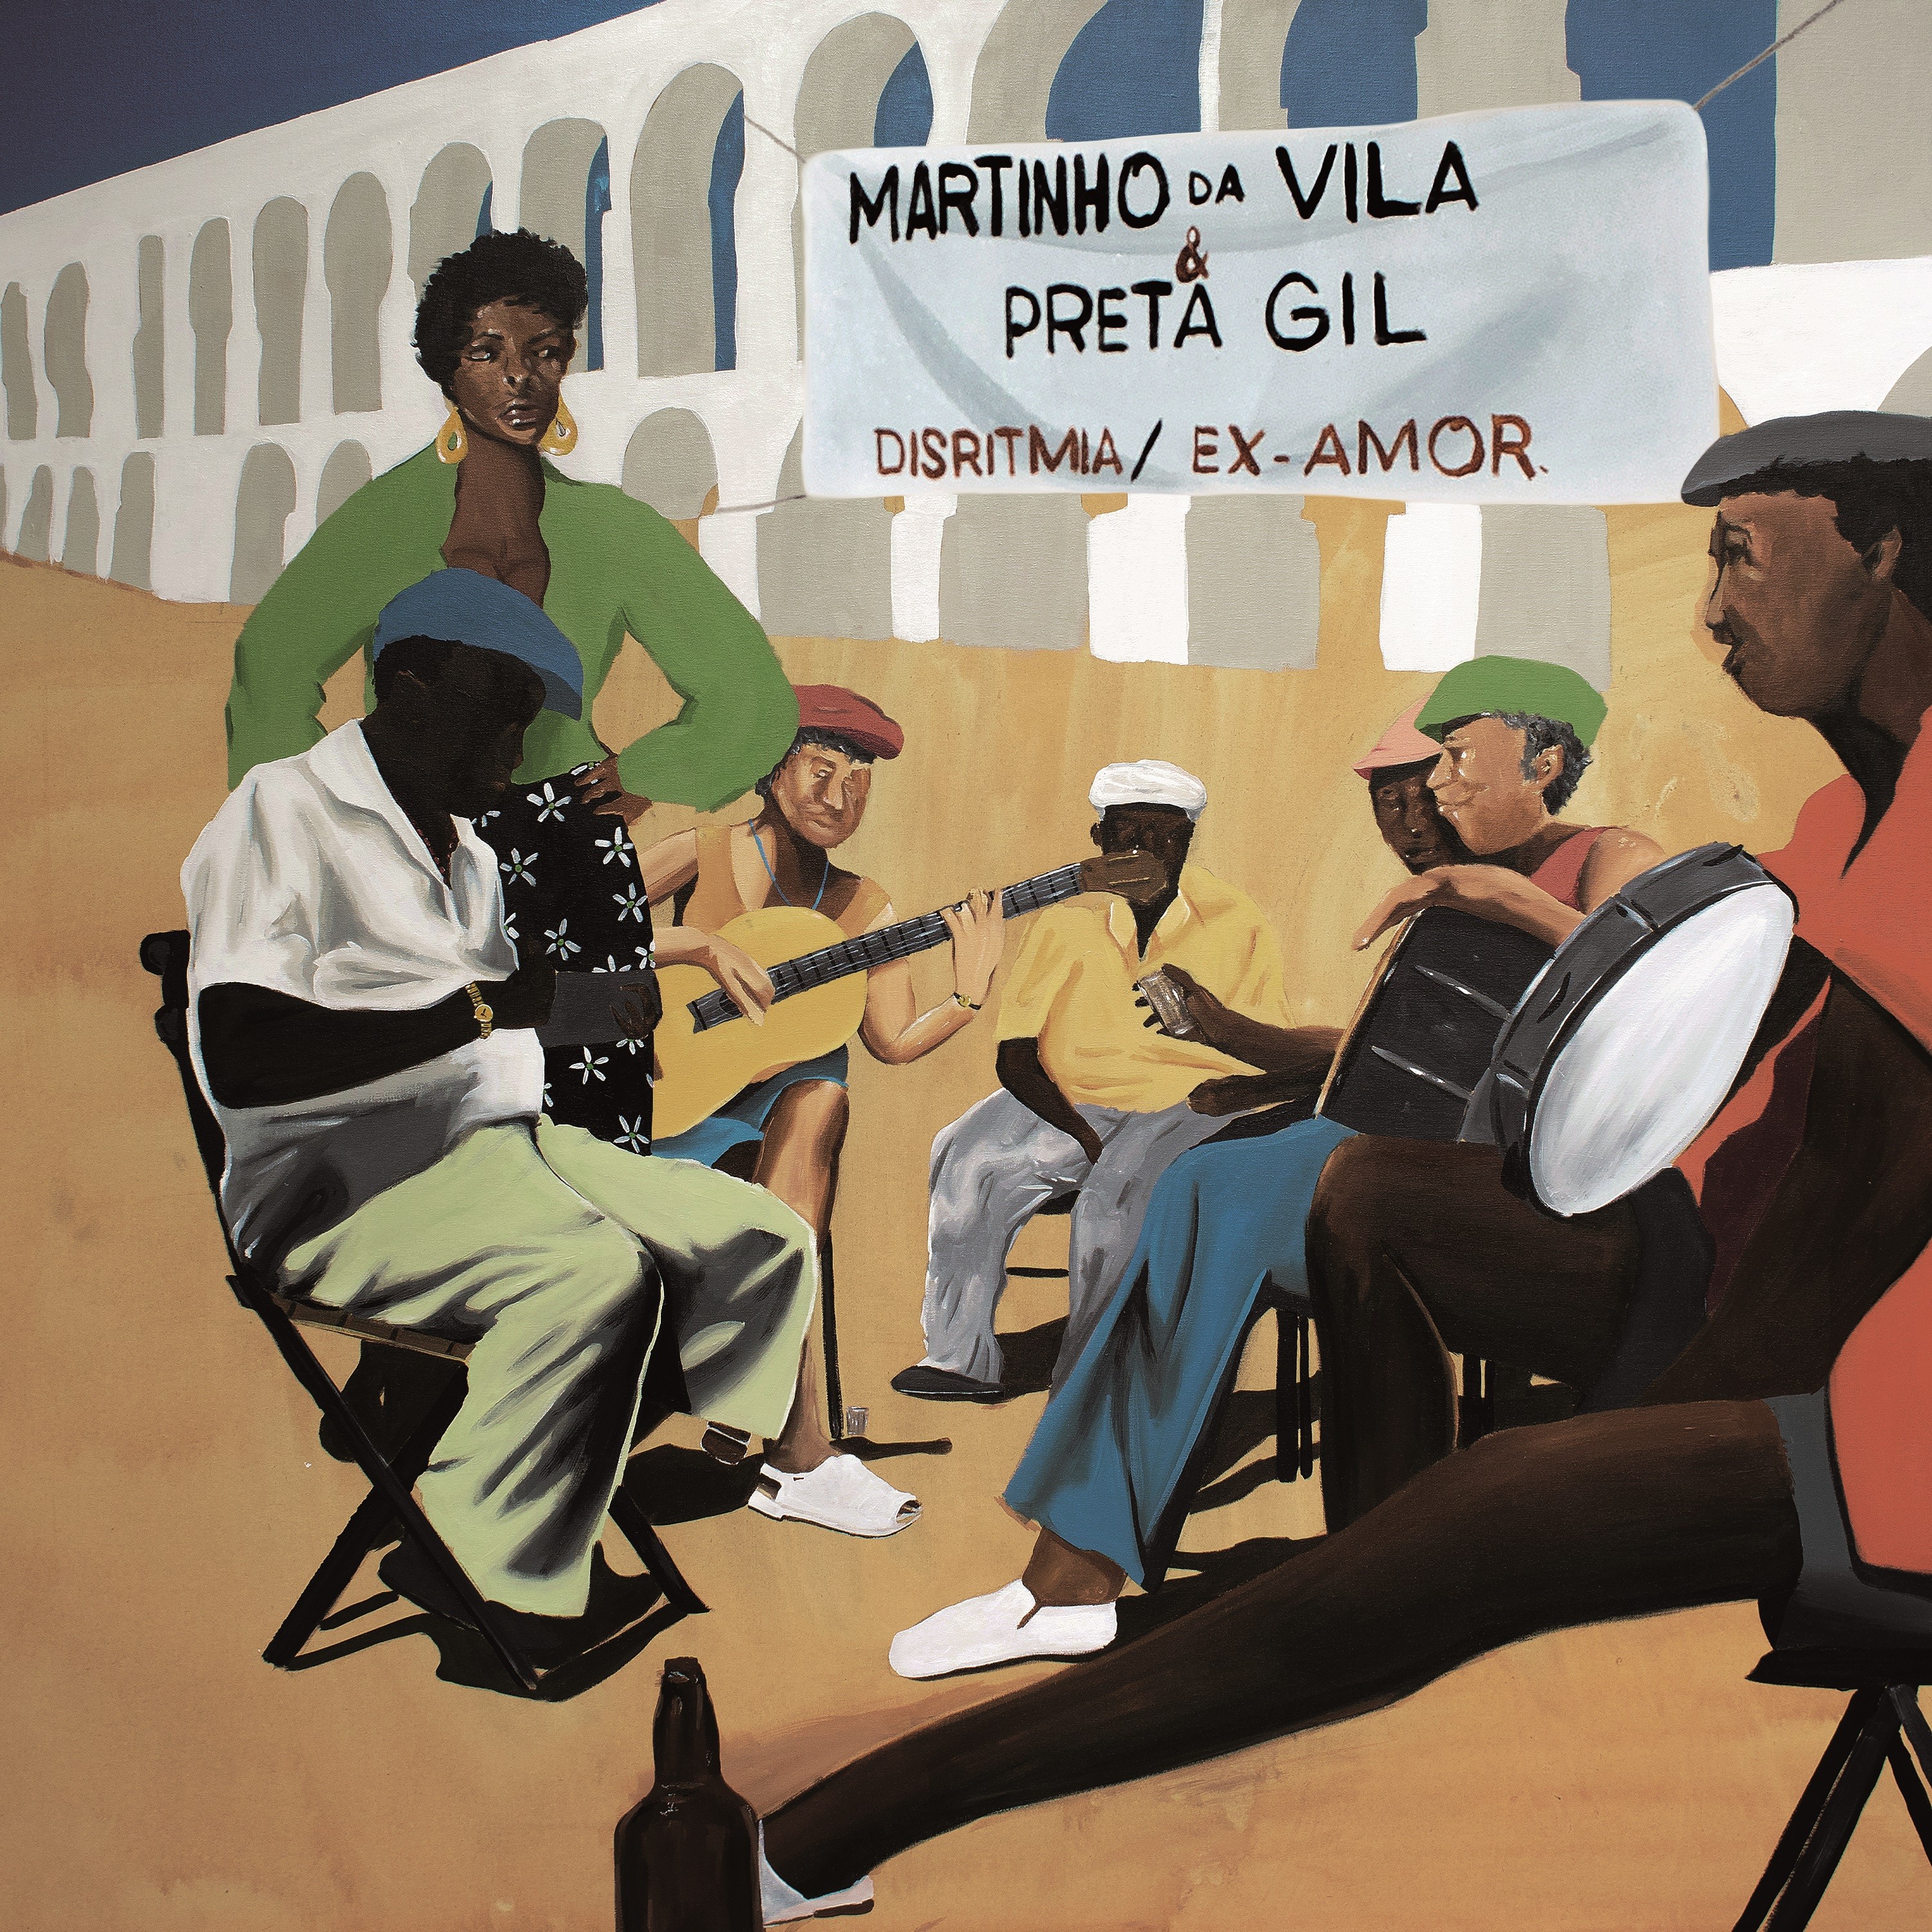 Martinho da Vila lança em maio álbum ‘Violões e cavaquinhos’ com Preta Gil na releitura de dois sambas famosos